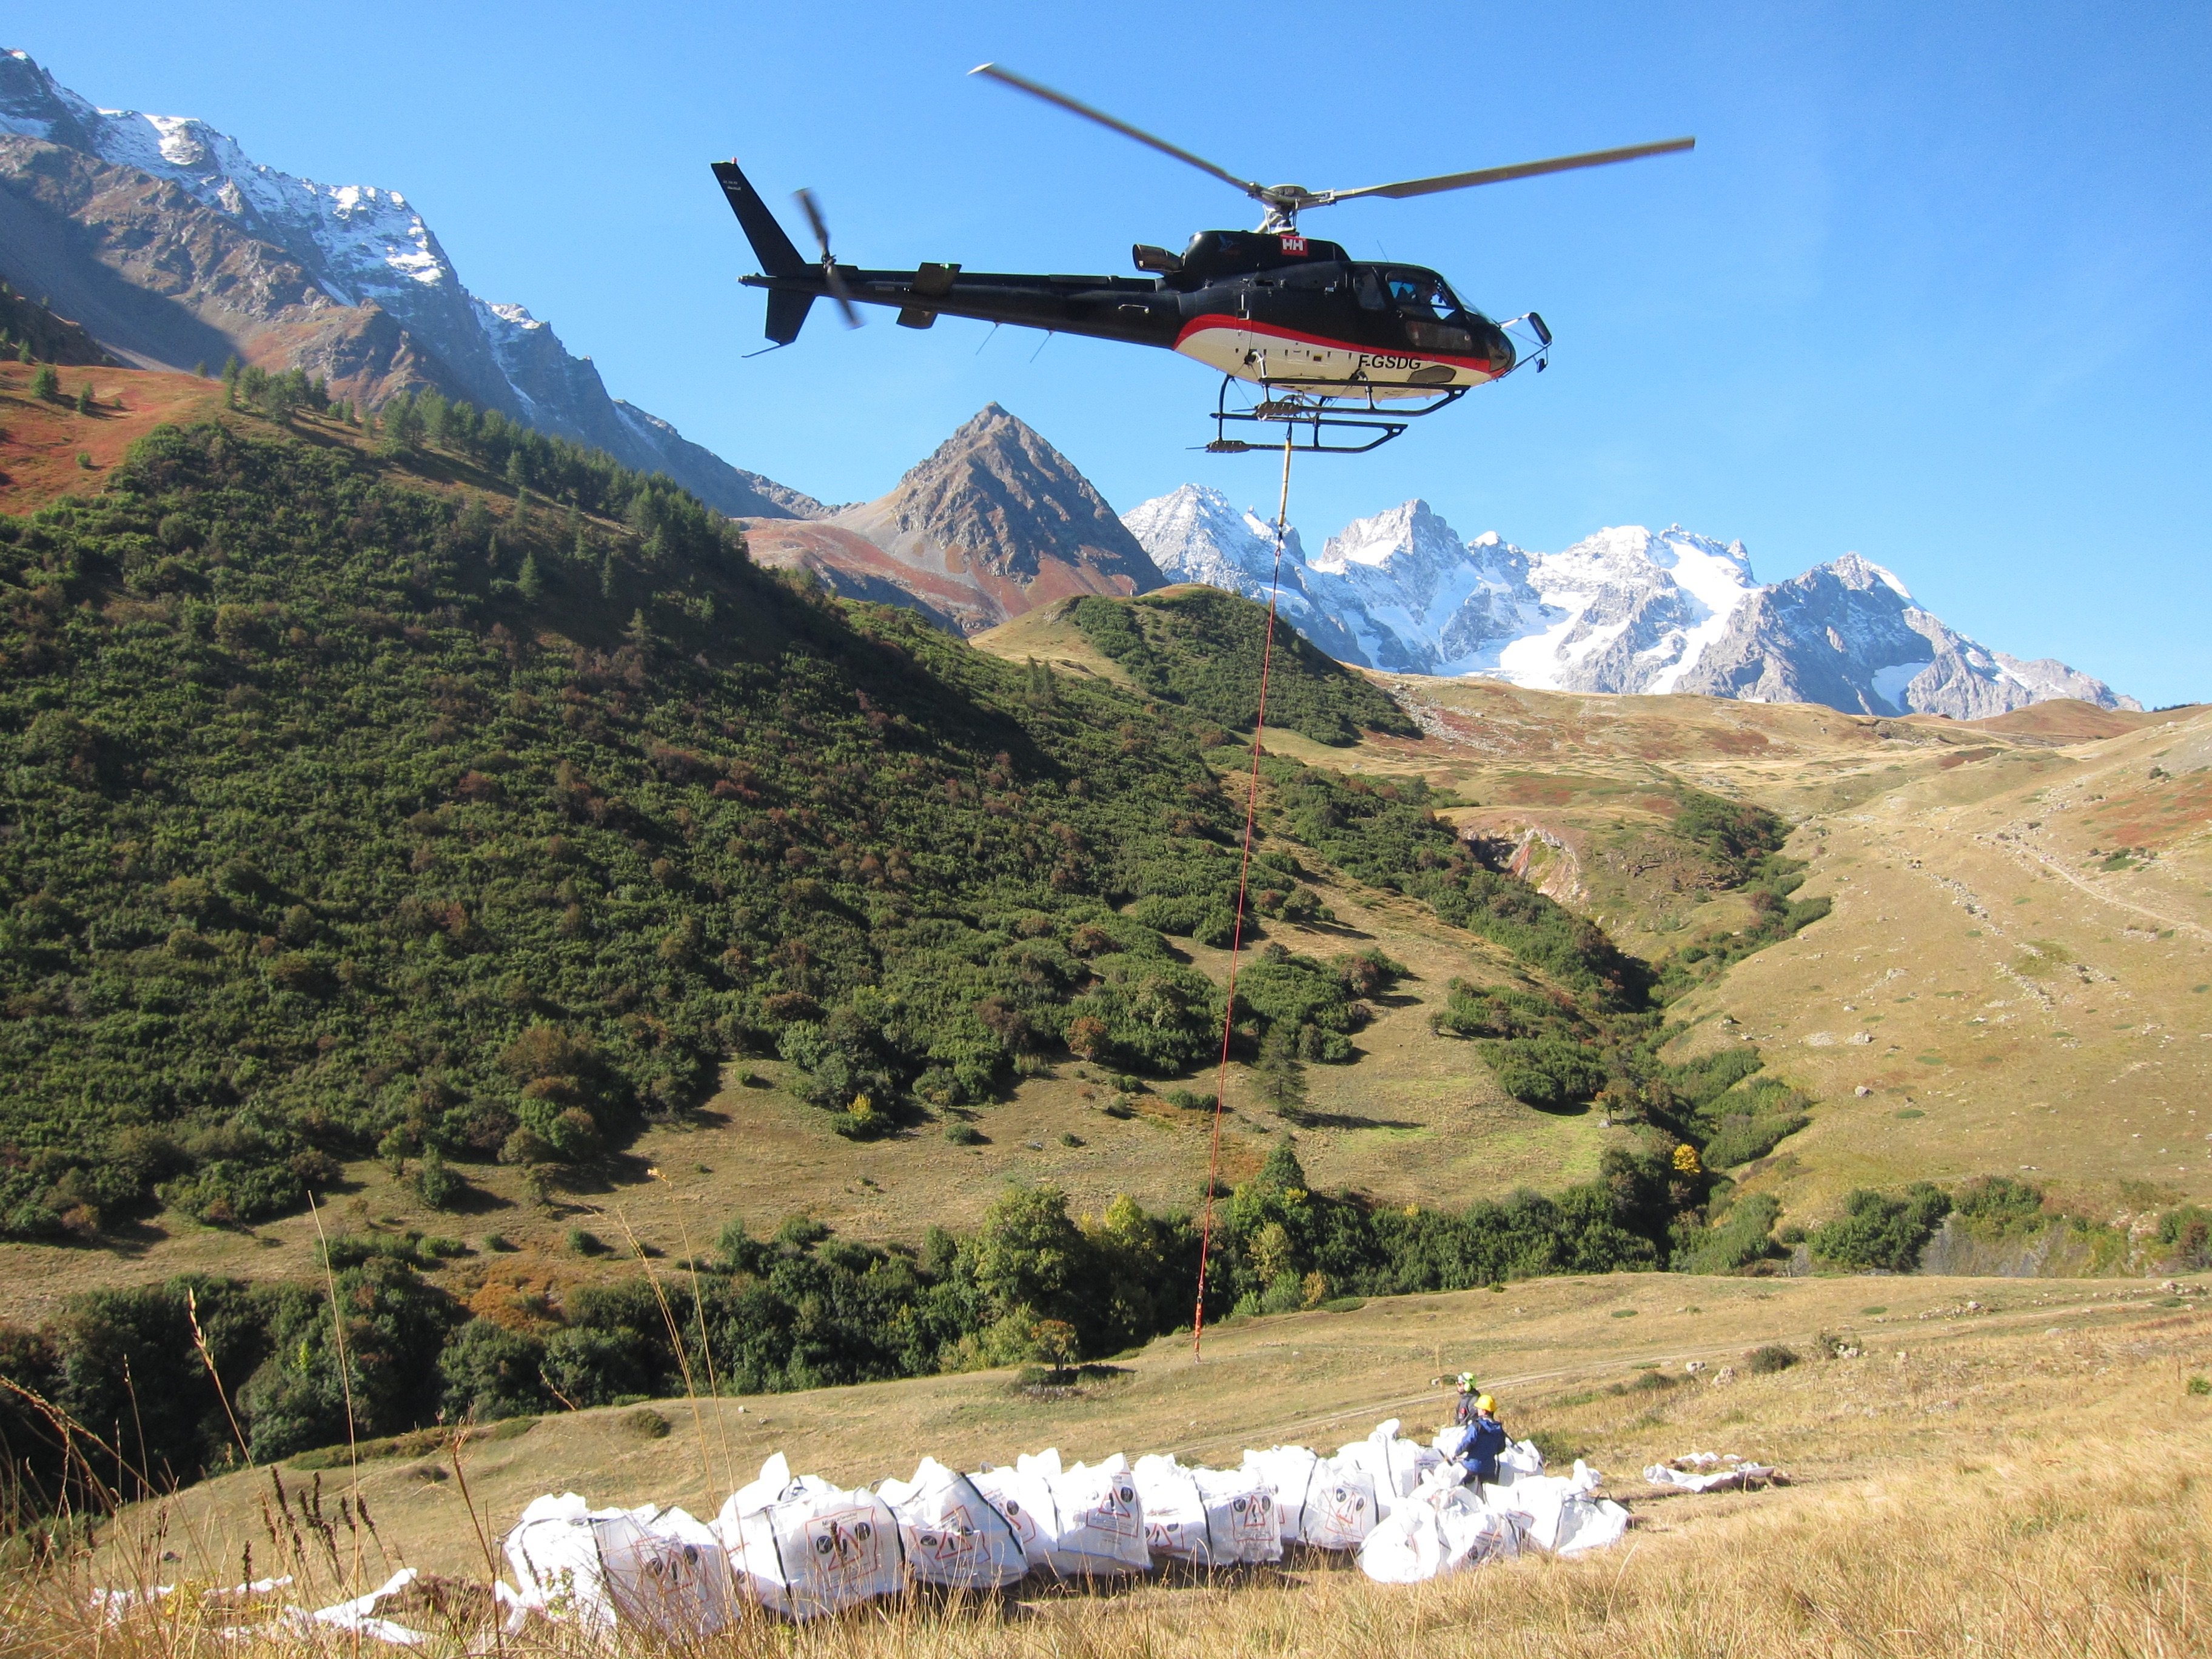 Des tonnes de terre du col du Galibier ont été descendues par hélicoptère de 2500 à 1900 mètres d’altitude, où la température moyenne est plus élevée de 3 degrés. Cela permet de simuler le réchauffement climatique. Université de Grenoble Alpes/CNRS